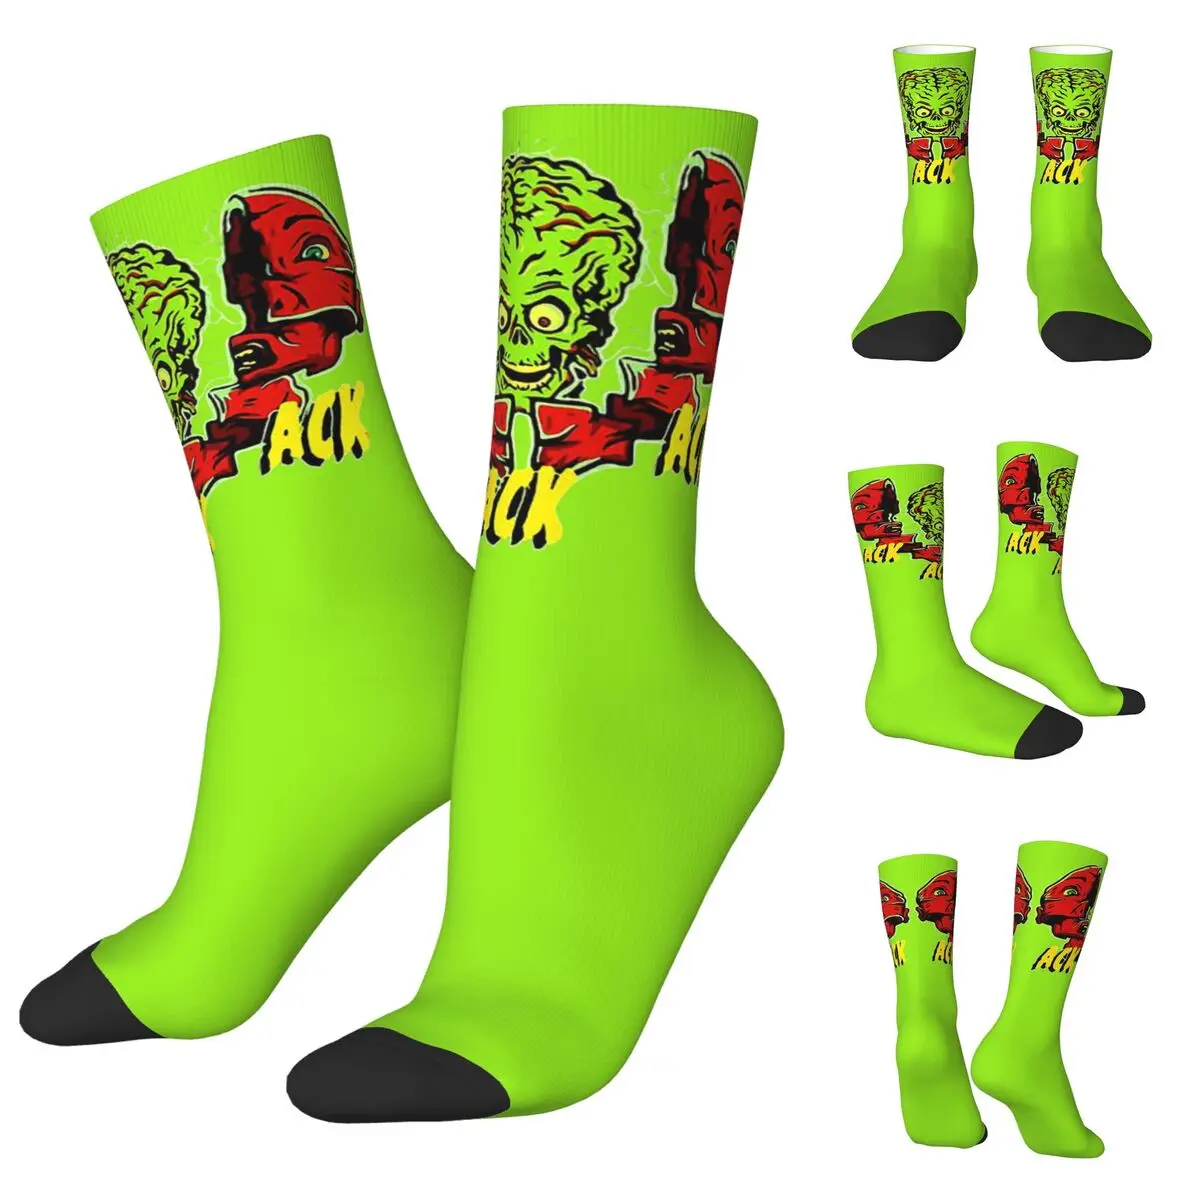 носки унисекс kiss band anji john велосипедные счастливые носки с 3d принтом сумасшедшие носки в уличном стиле Носки унисекс Ack Mars Attack, велосипедные счастливые носки с 3D принтом, сумасшедшие носки в уличном стиле